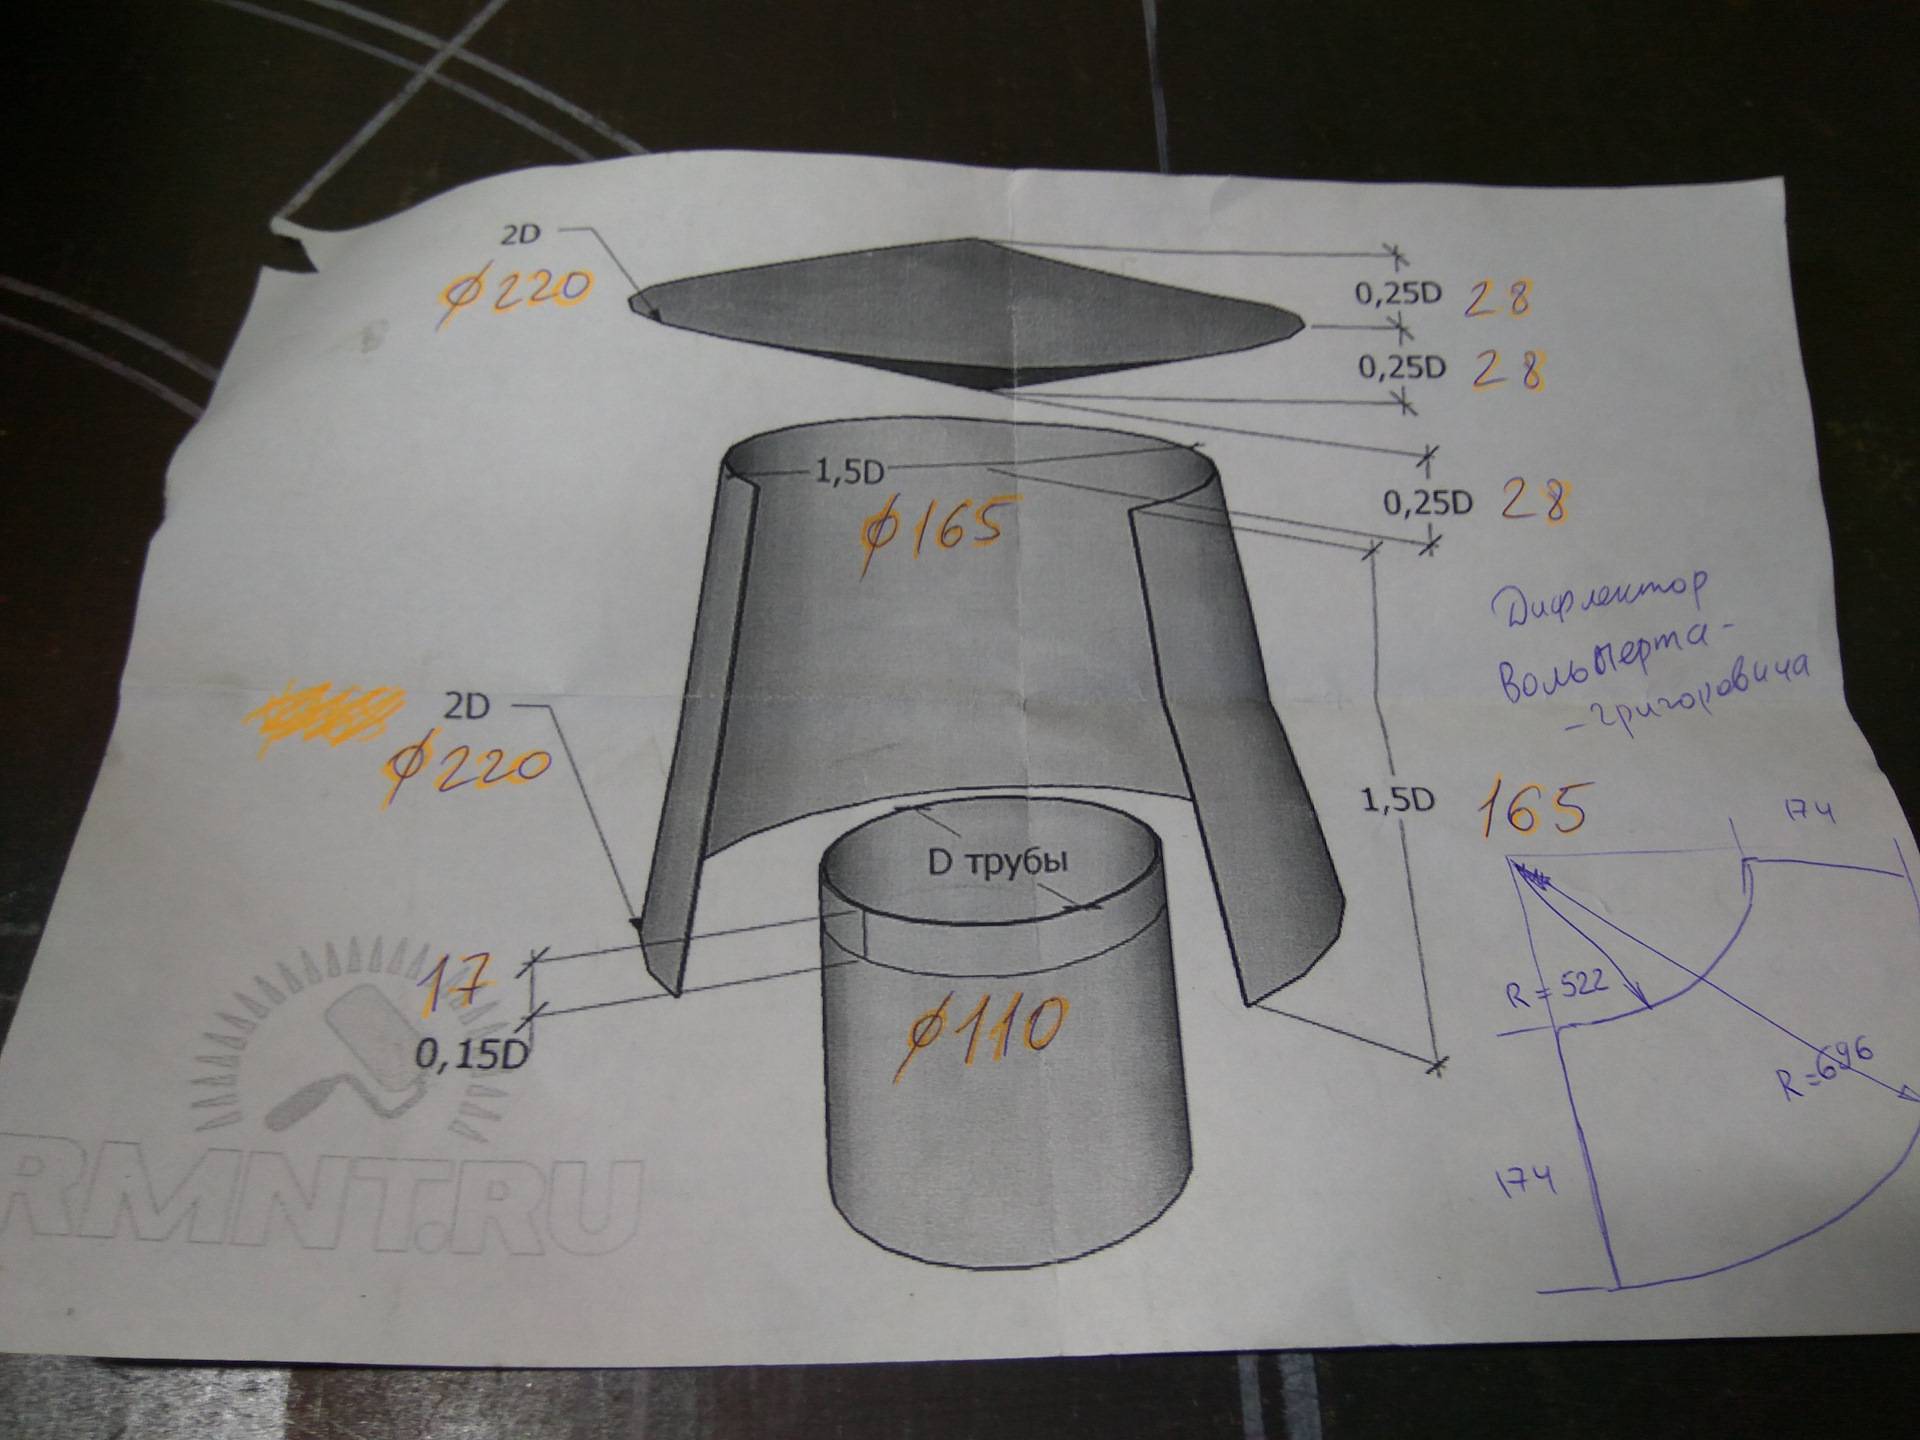 Дефлектор на трубу дымохода: виды устройств и принцип работы